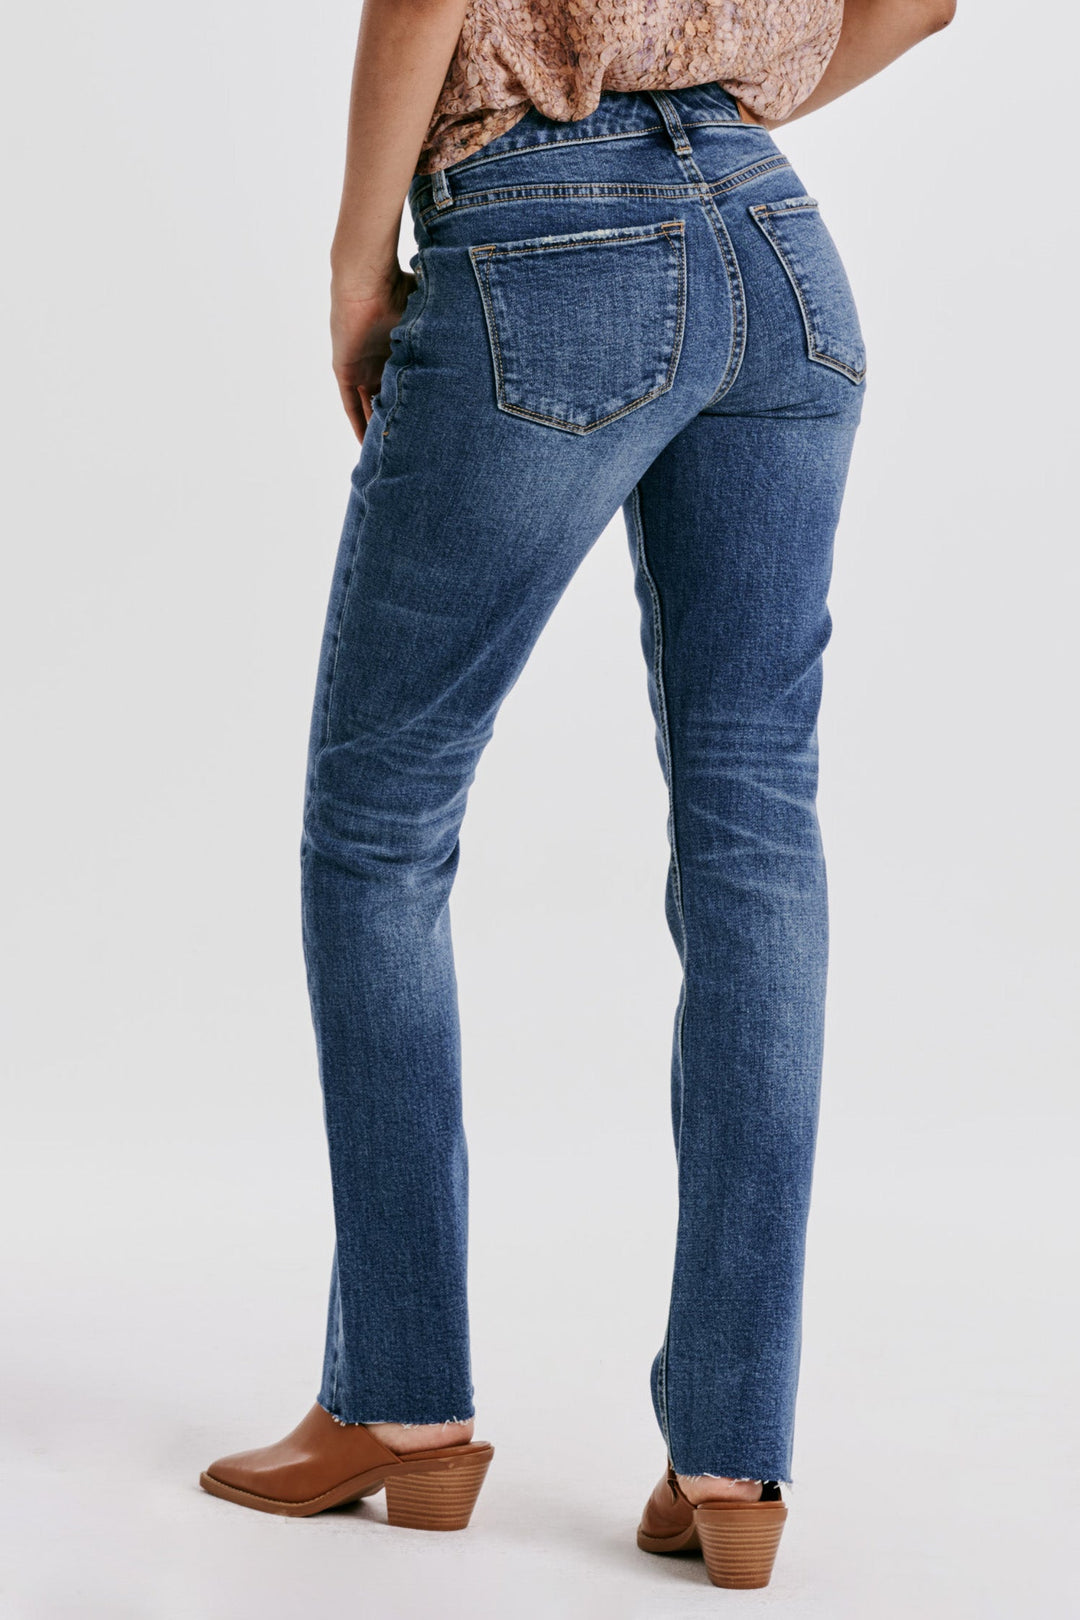 playback-mid-rise-slim-straight-jeans-everett